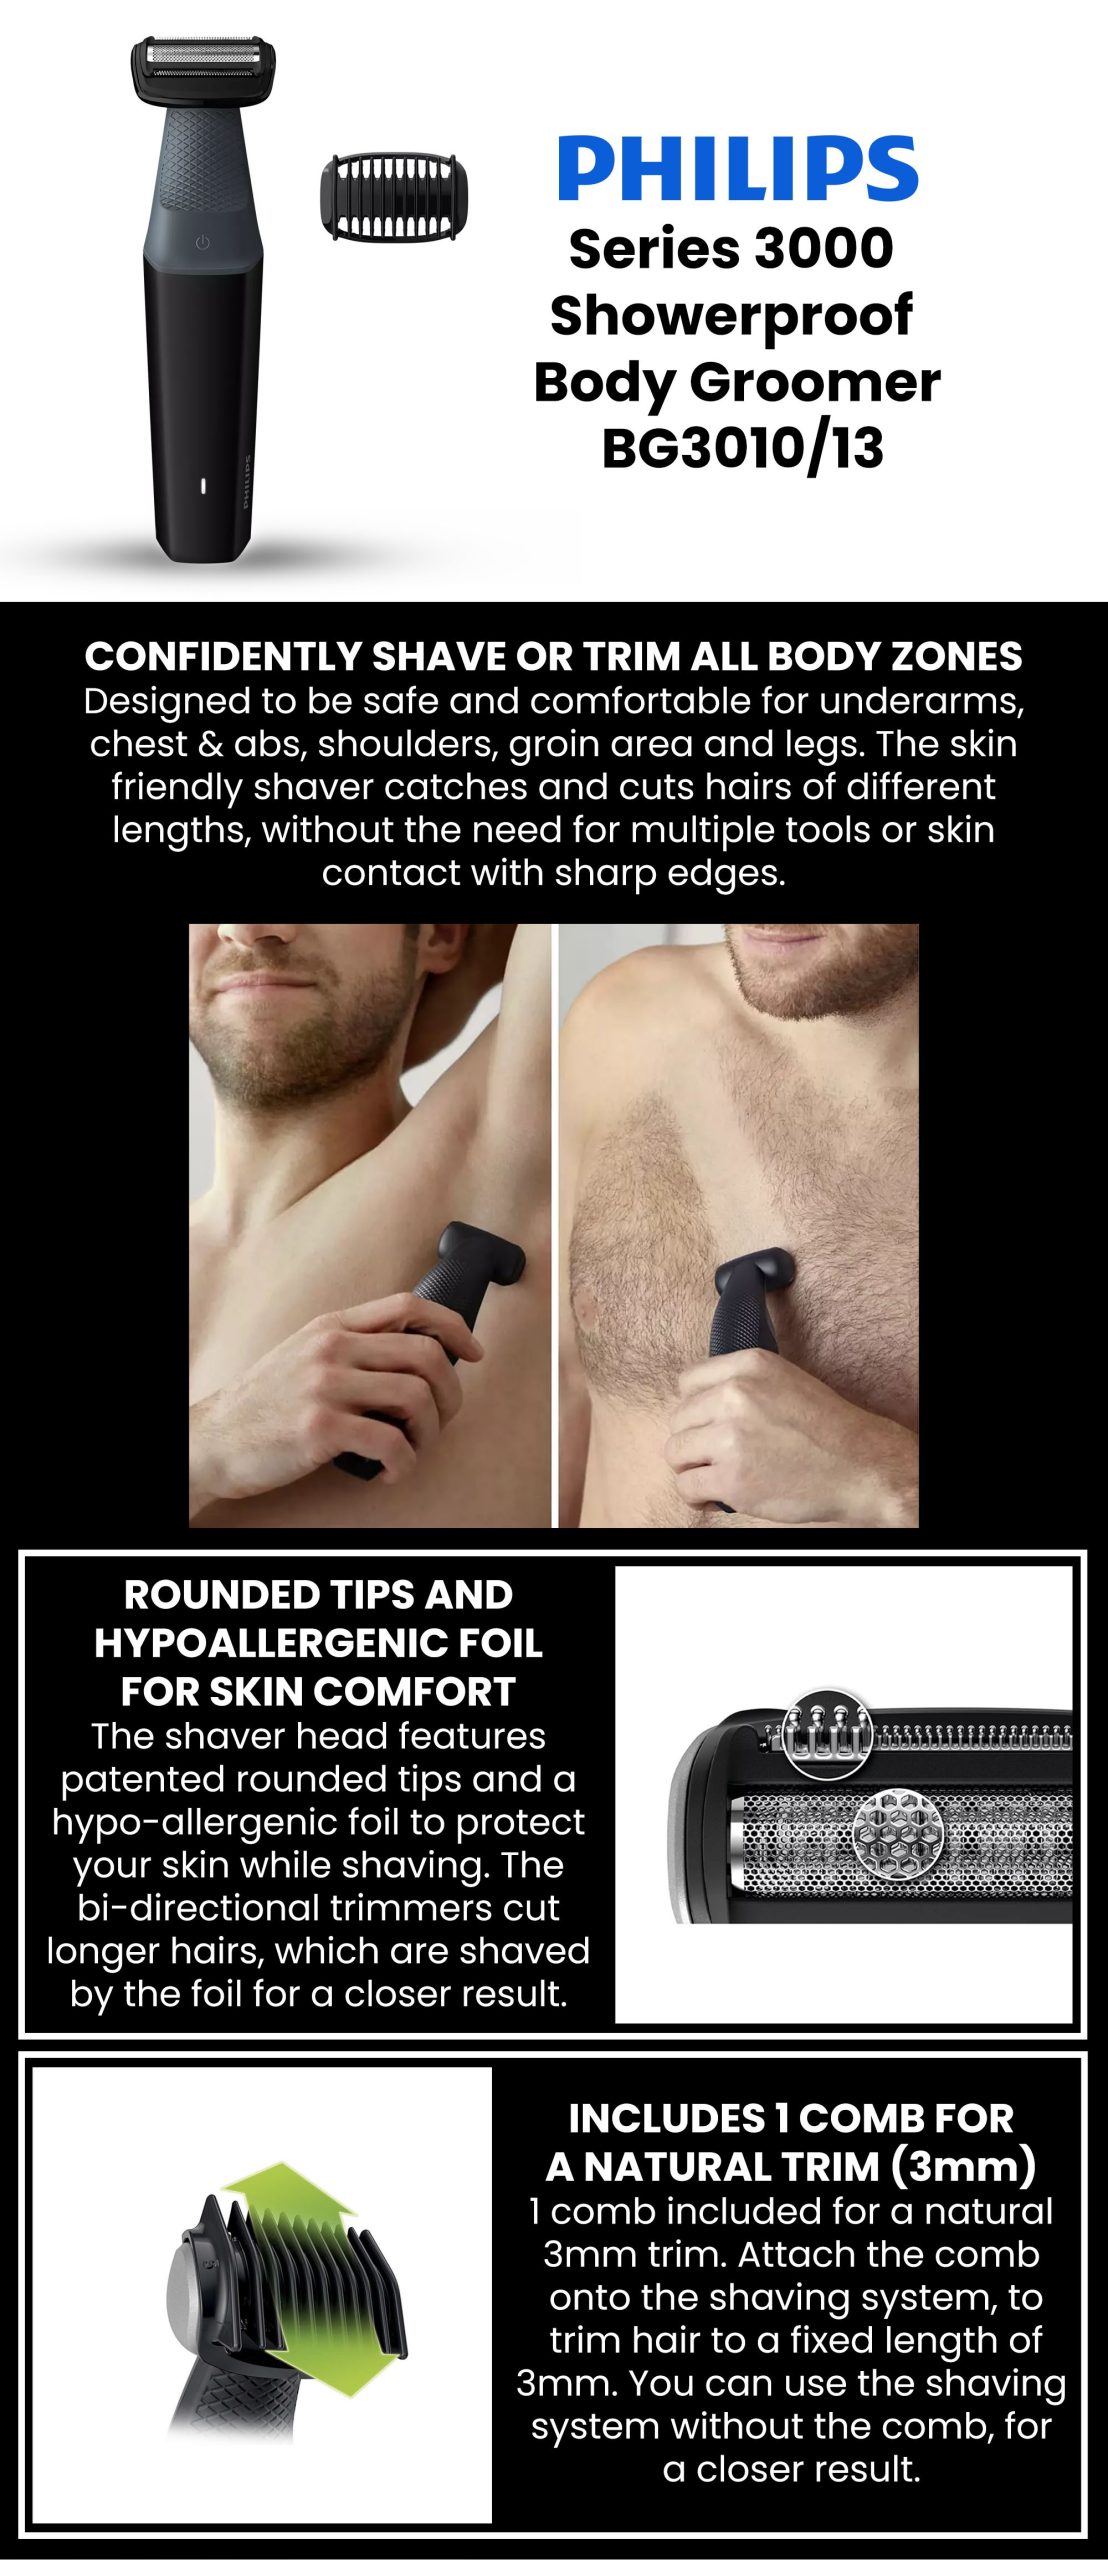 philips bg3010/13 | Philips Showerproof Body Groomer
